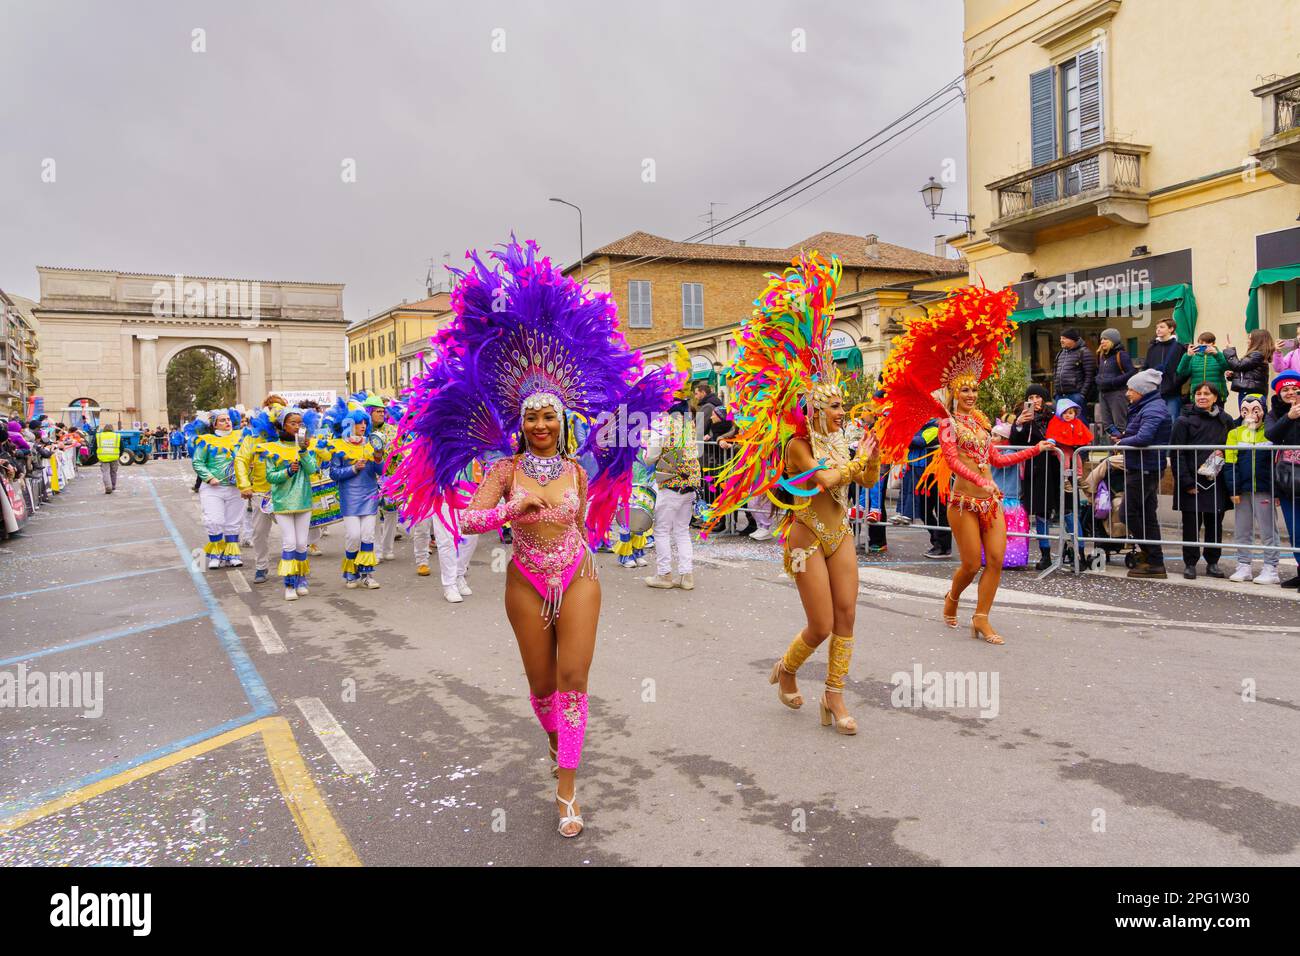 Crema, Italien - 26. Februar 2023: Karnevalsparade mit Tänzern in Kostümen und Menschenmenge in Crema, Lombardei, Norditalien Stockfoto